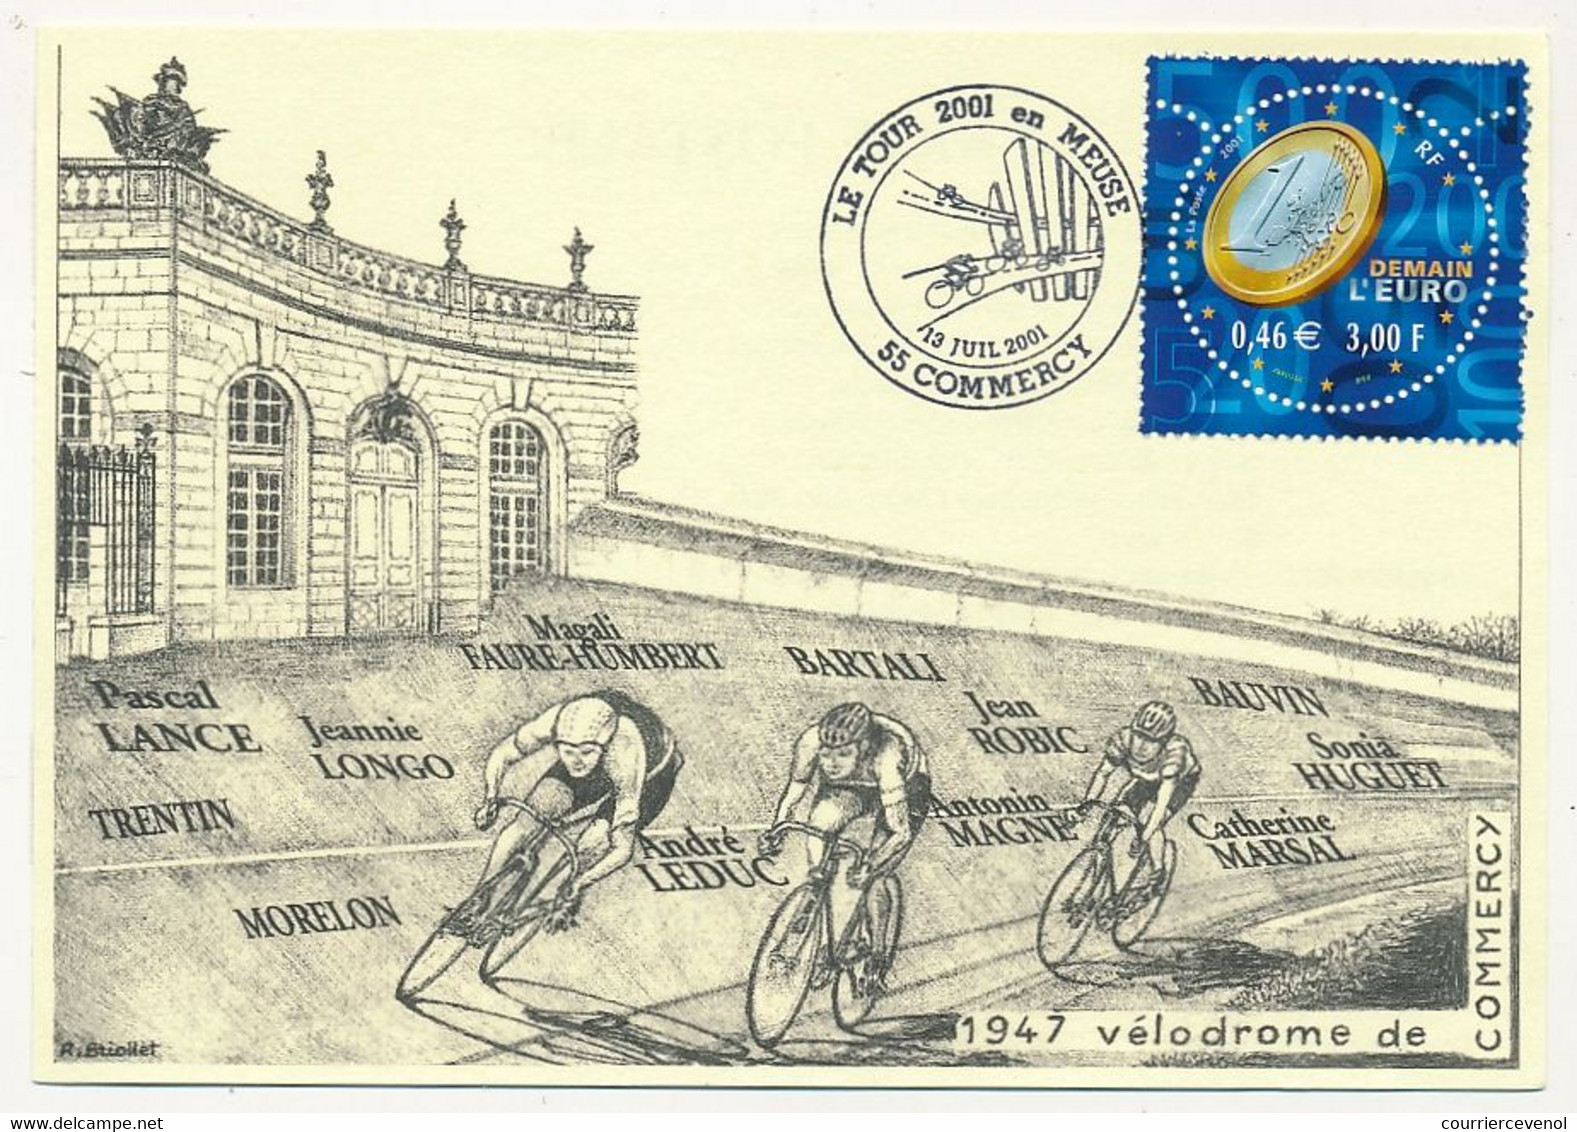 FRANCE - CPM Commémorative - Le Tour 2001 En Meuse - Vélodrome De Commercy 19/7/2001 - Oblit. Temporaire - Cyclisme